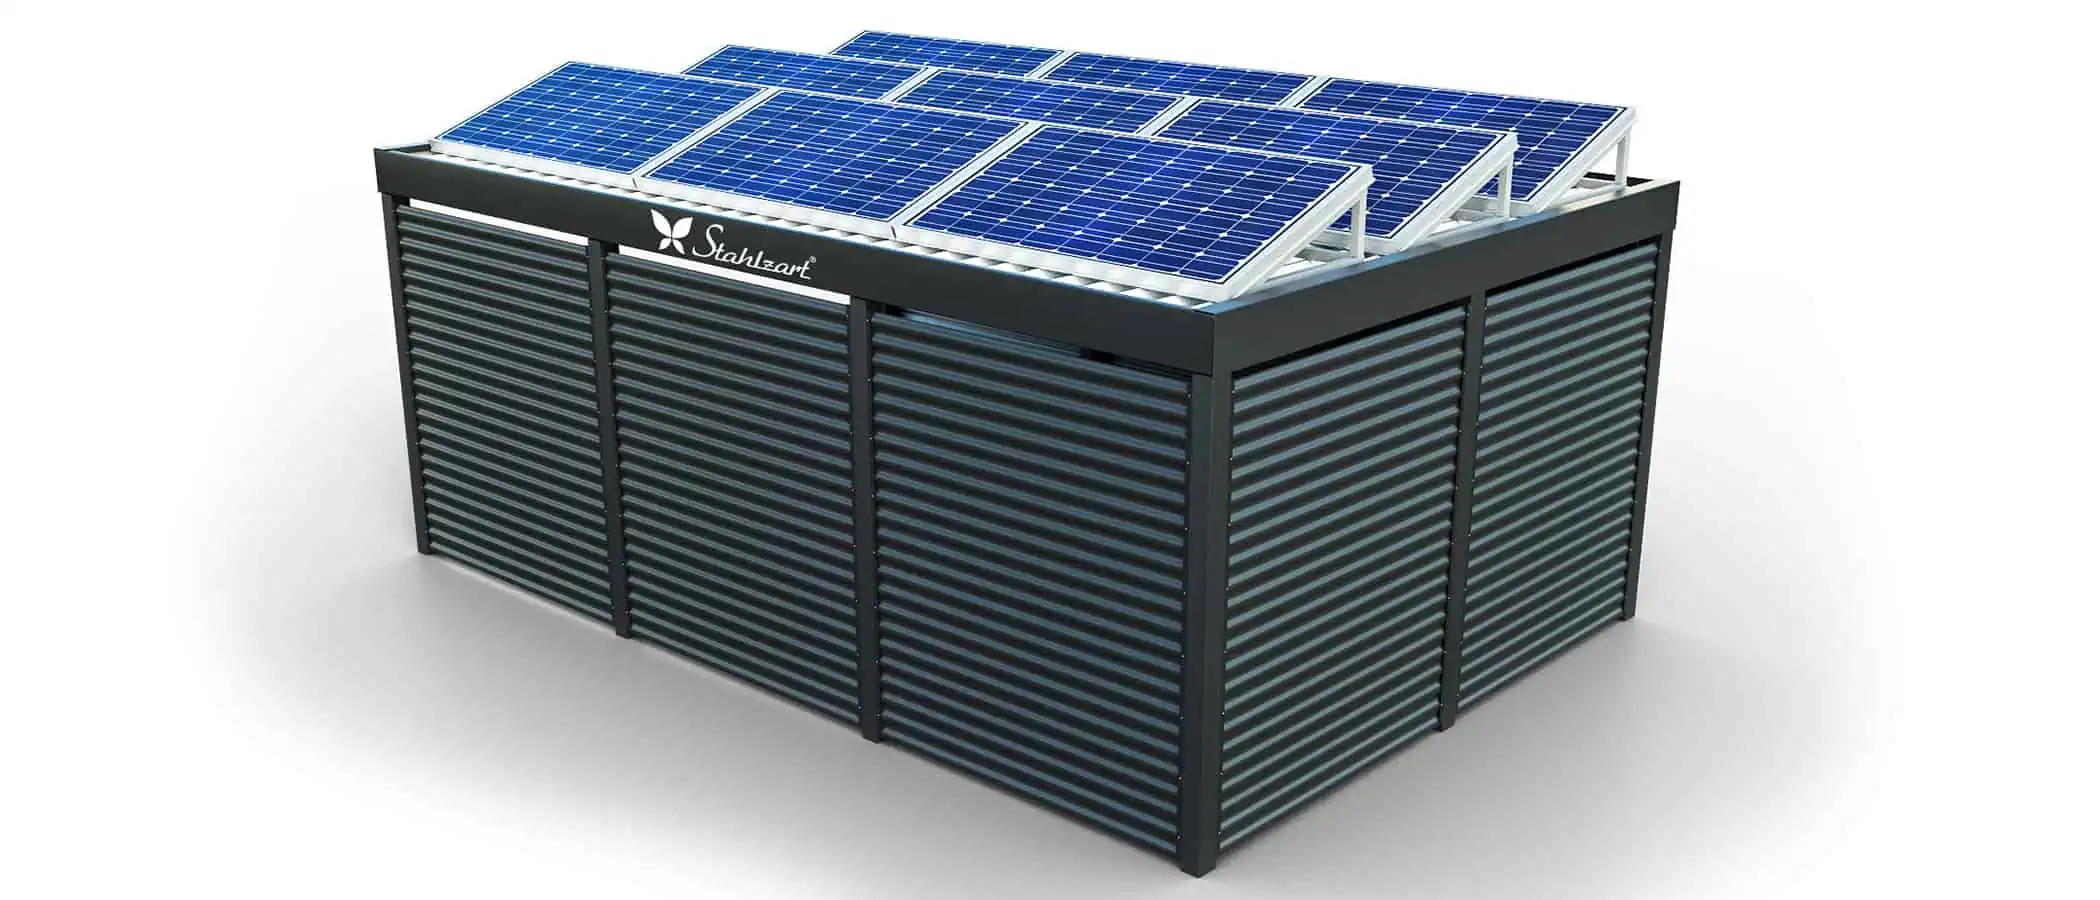 solar-carport-mit-flachdach-carports-pv-anlage-solaranlage-photovoltaik-garagen-garagendach-solarcarport-installation-solarmodulen-solarcarports-flaechen-metall-blechwand-geschlossen-stahlzart